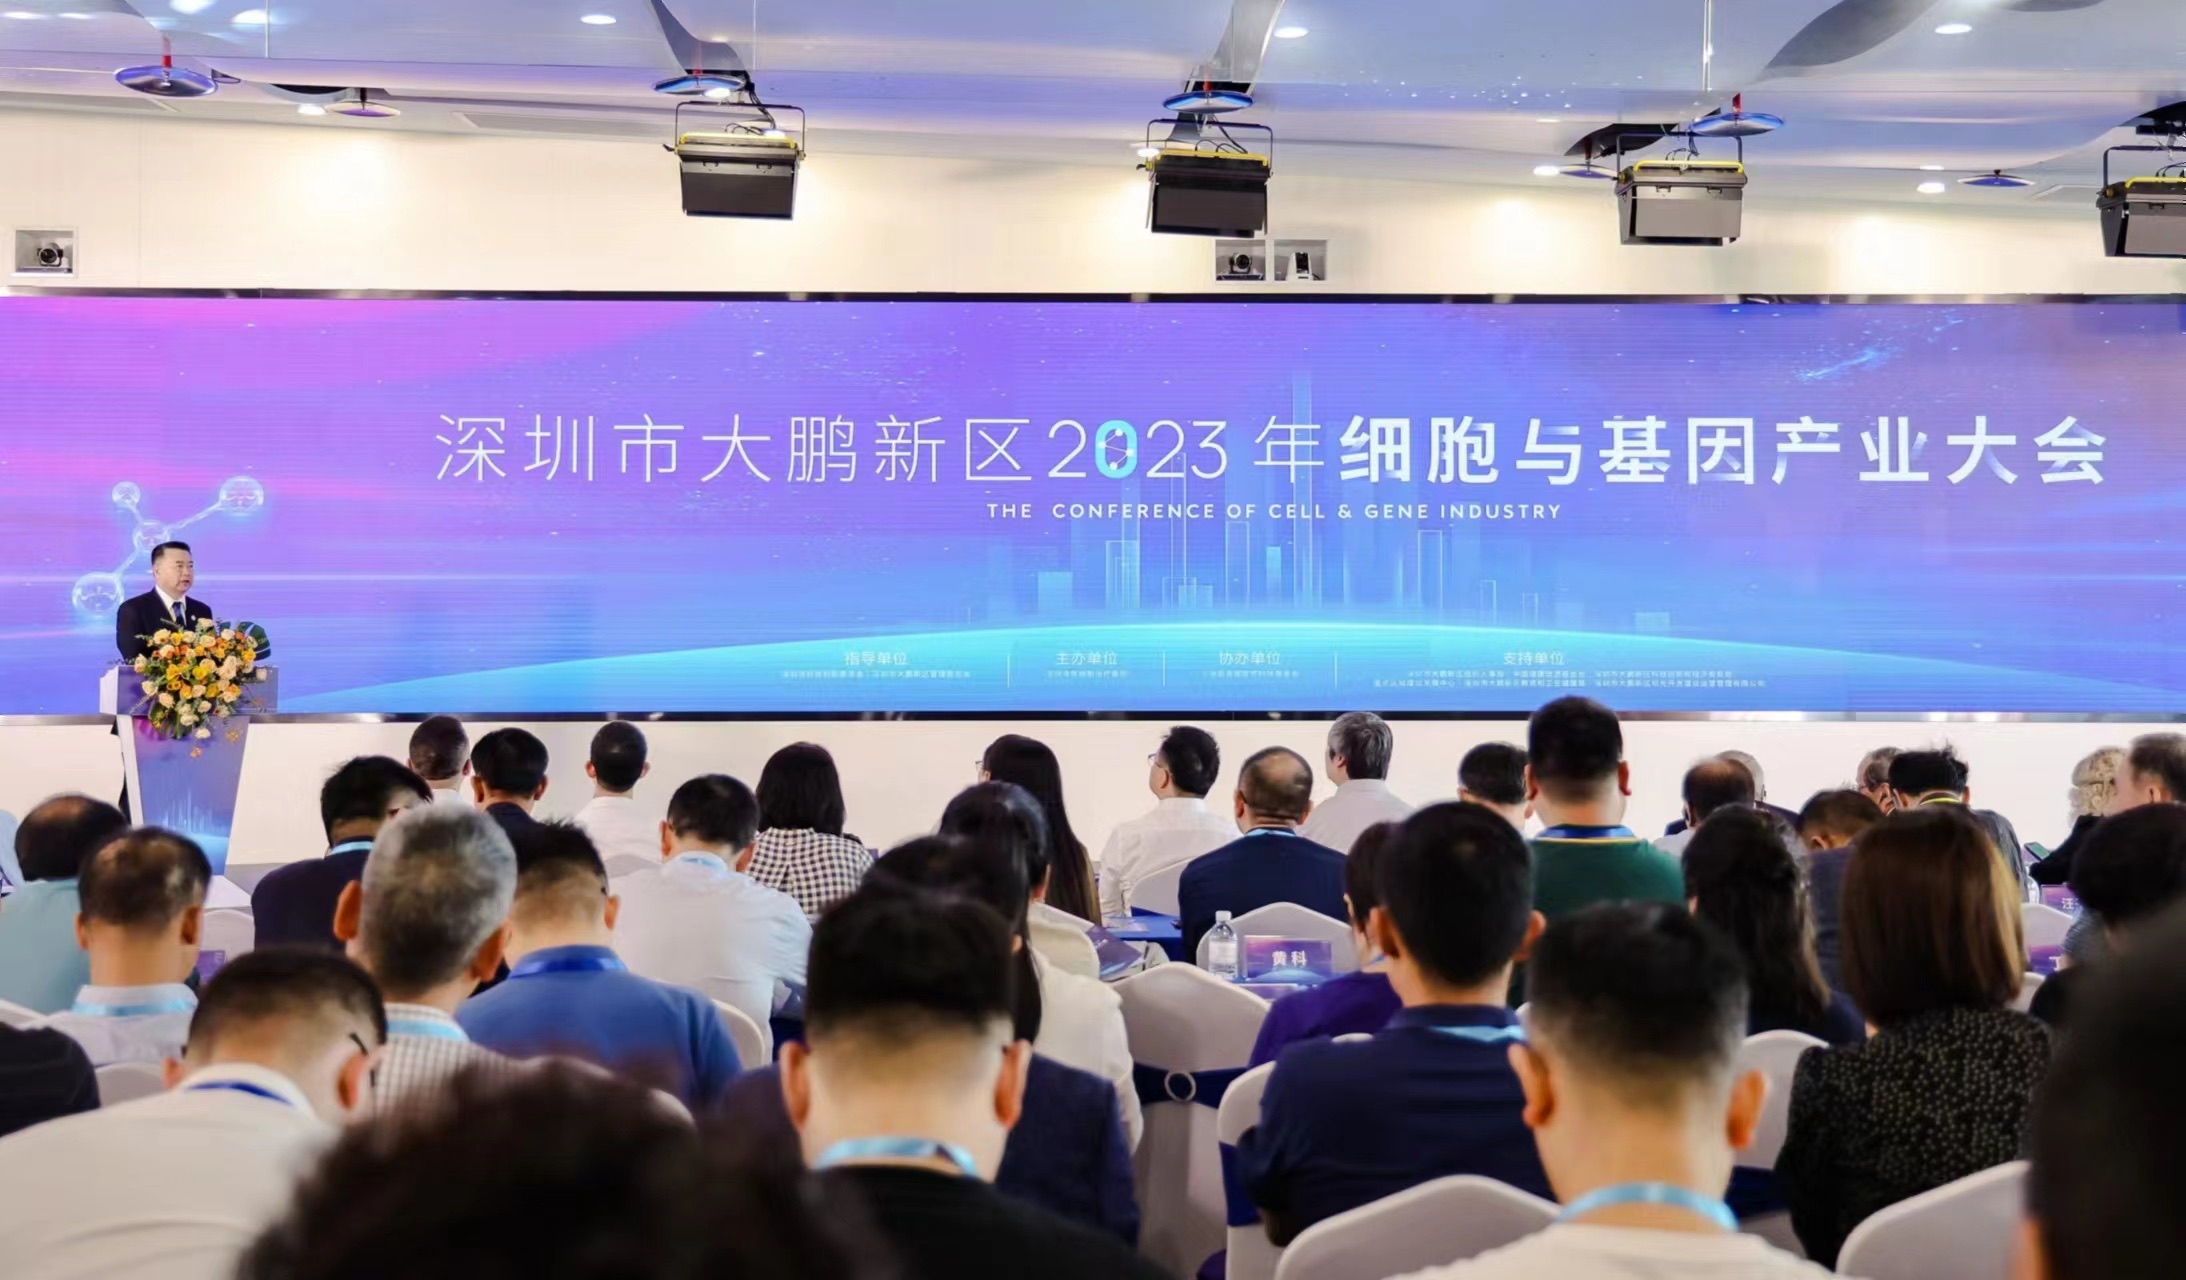 諾獎得主、院士齊聚 深圳大鵬2023年細胞與基因產業大會舉行